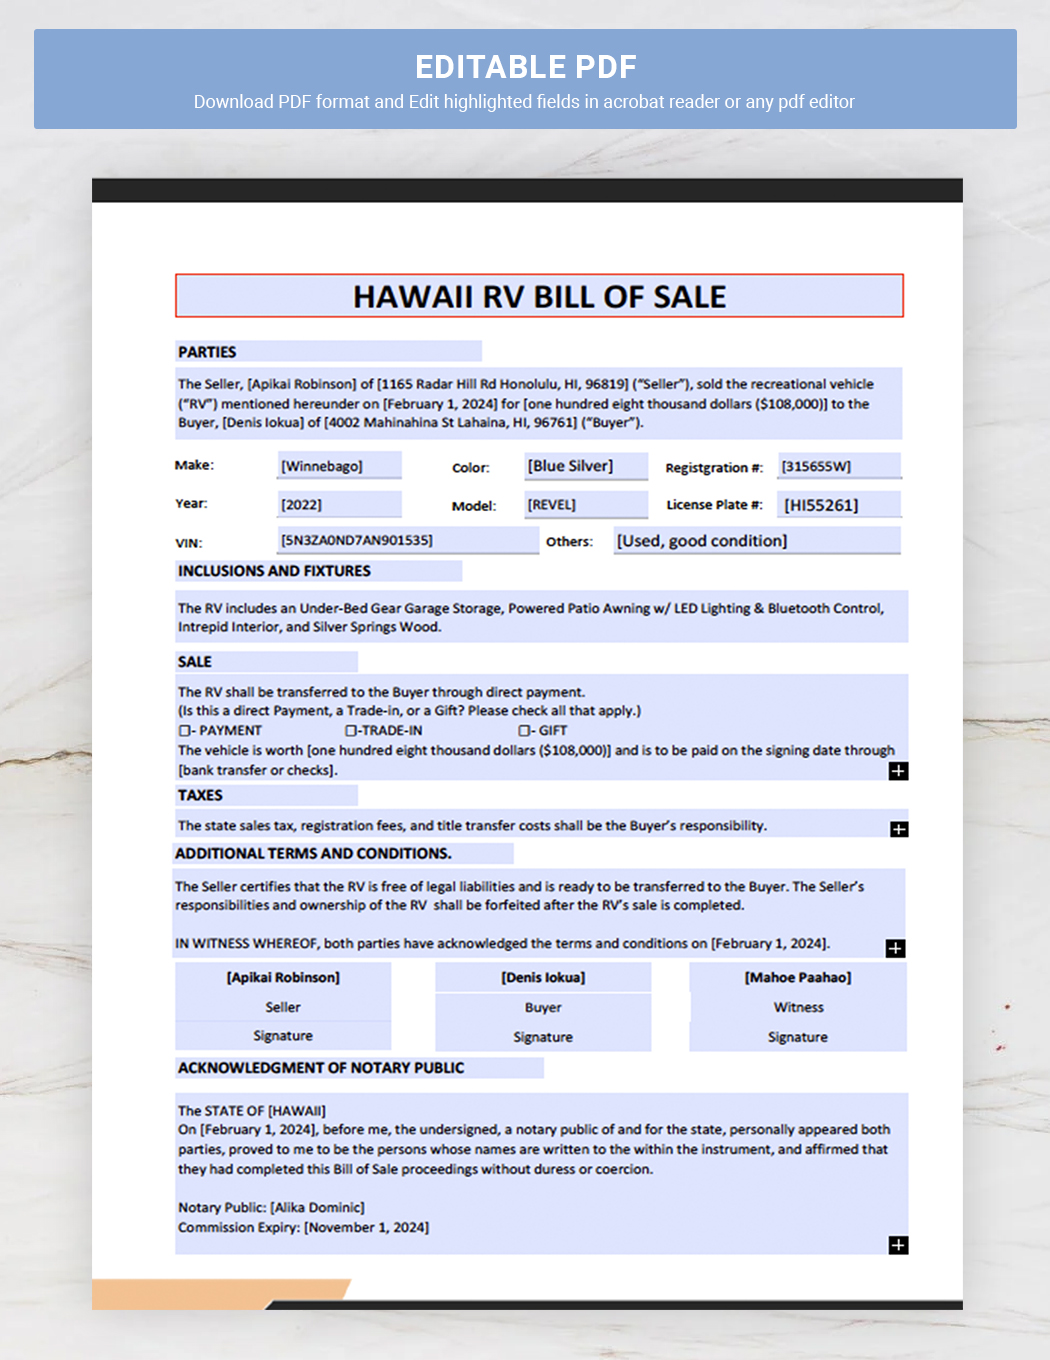 Hawaii RV Bill of Sale Template